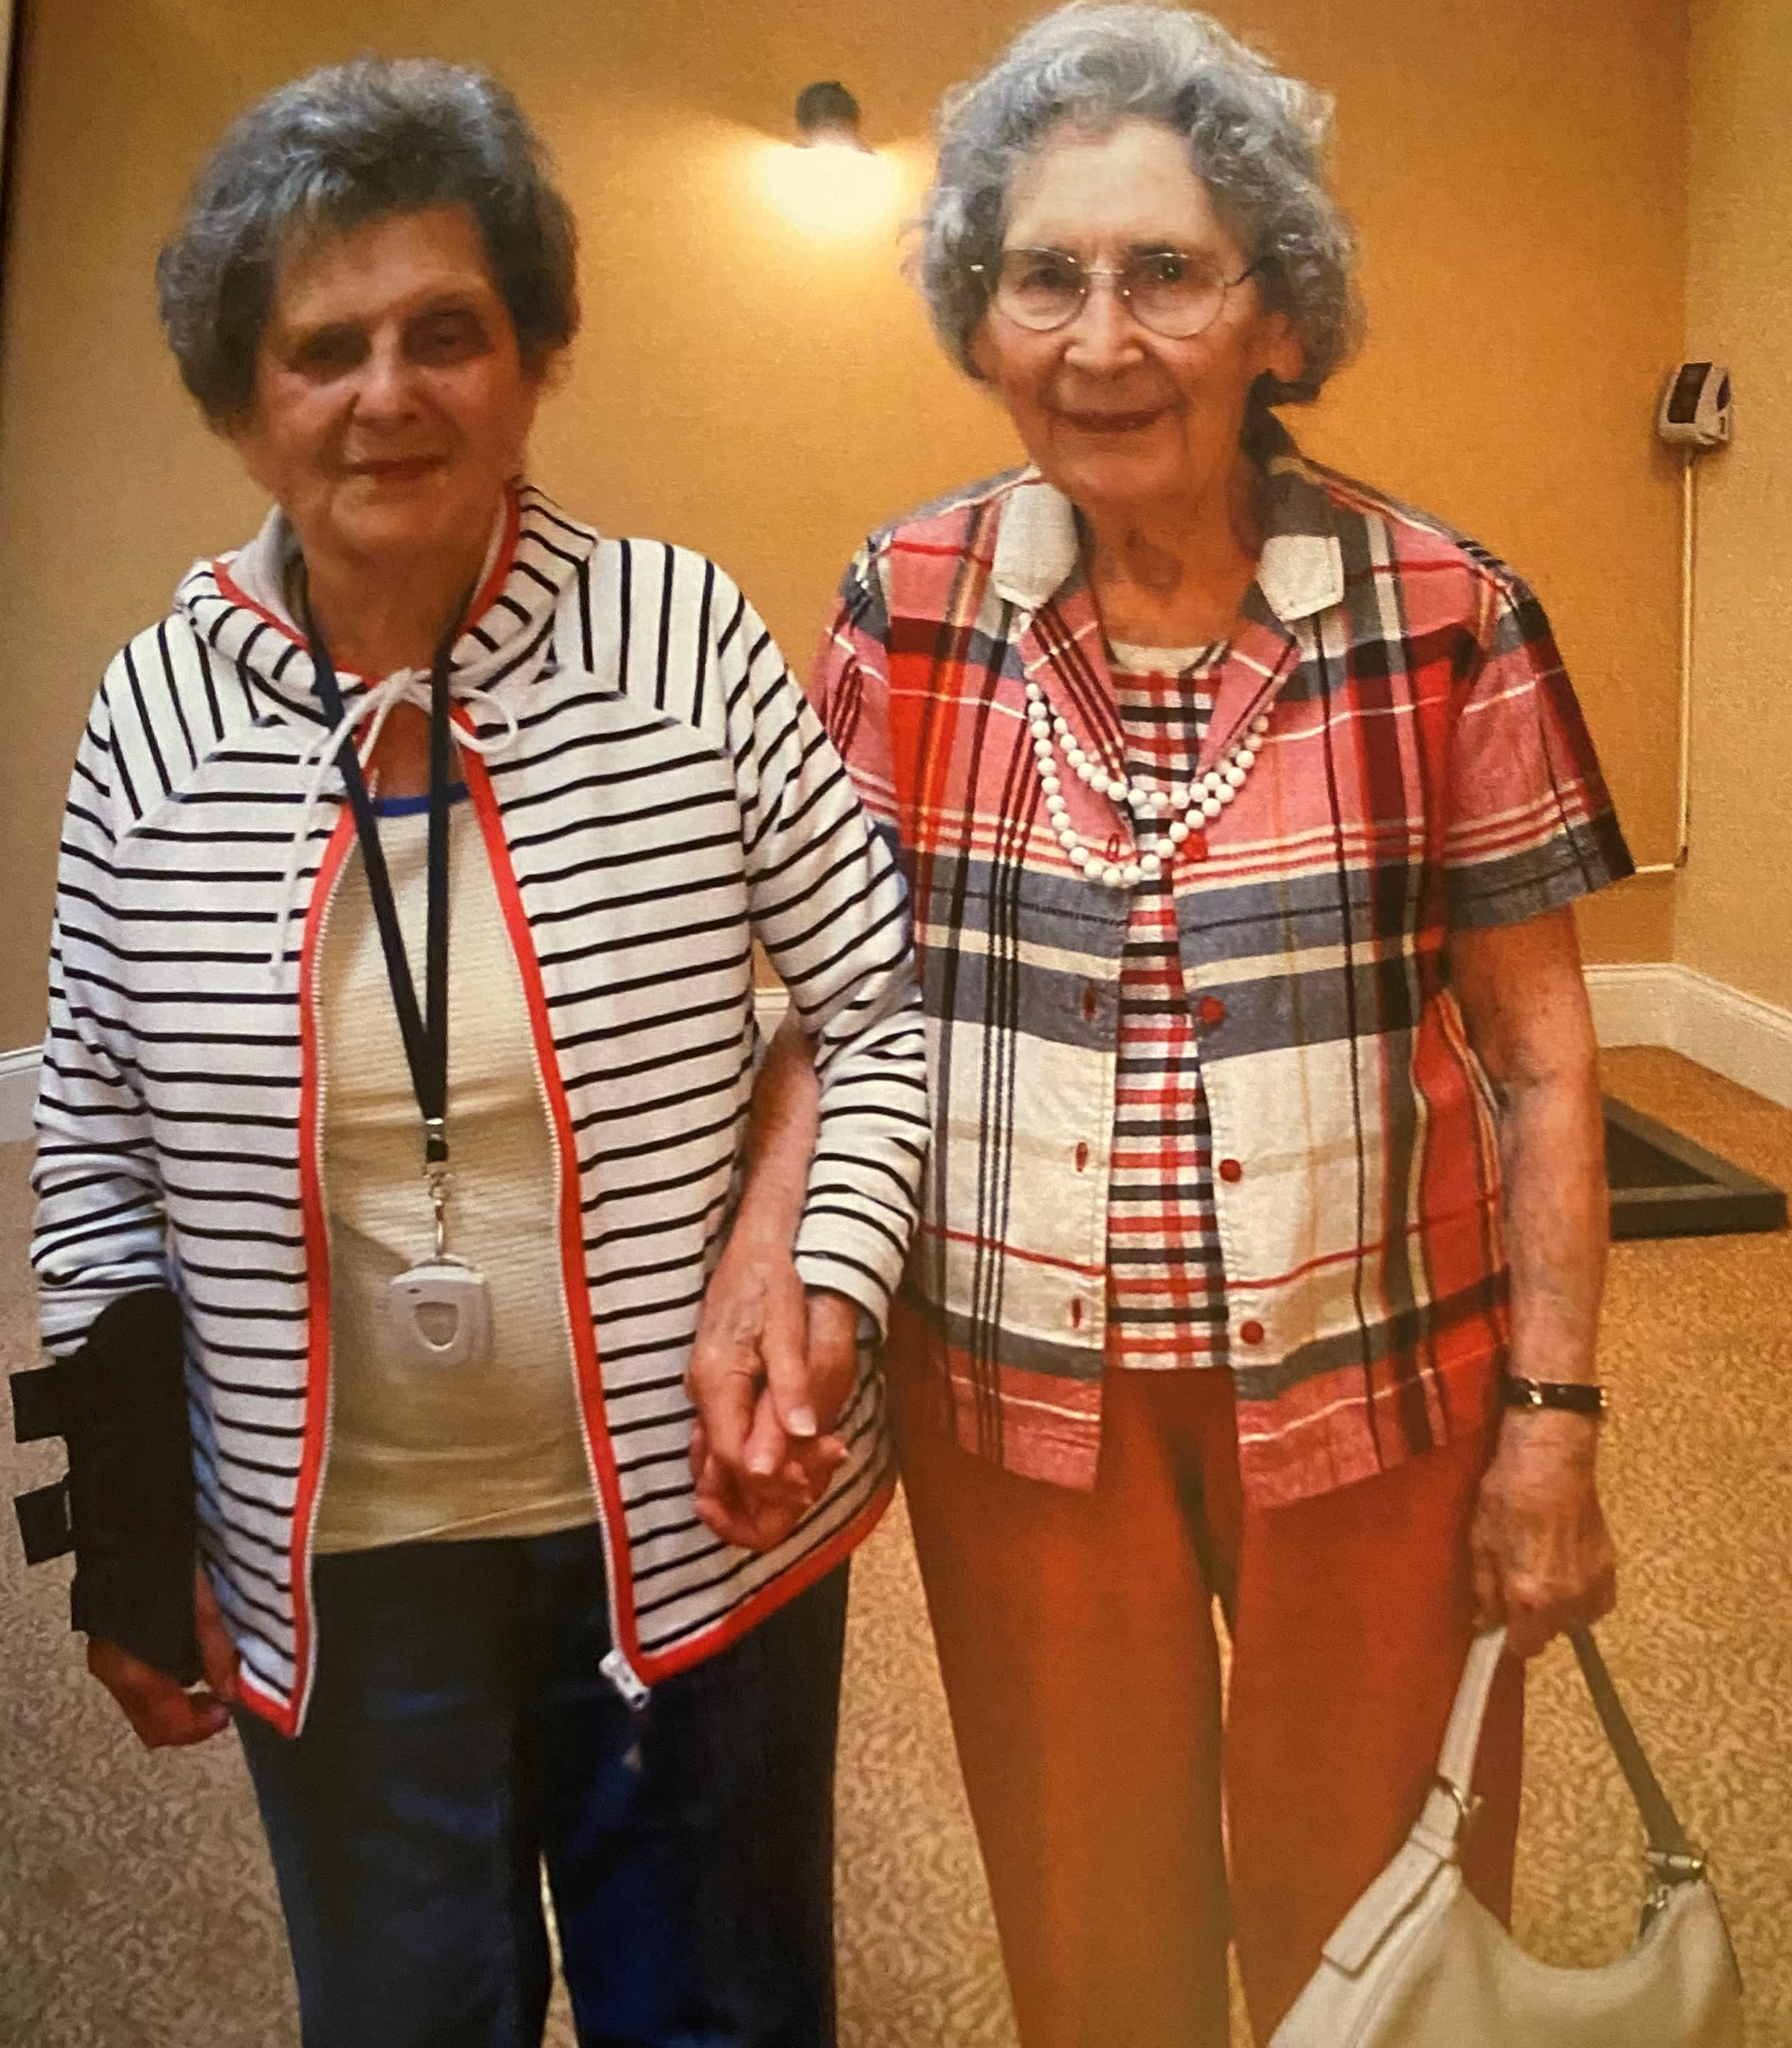 2 chị em thọ trên 100 tuổi nhưng vẫn minh mẫn, khỏe mạnh: Bí quyết là duy trì 4 thói quen đơn giản - Ảnh 1.